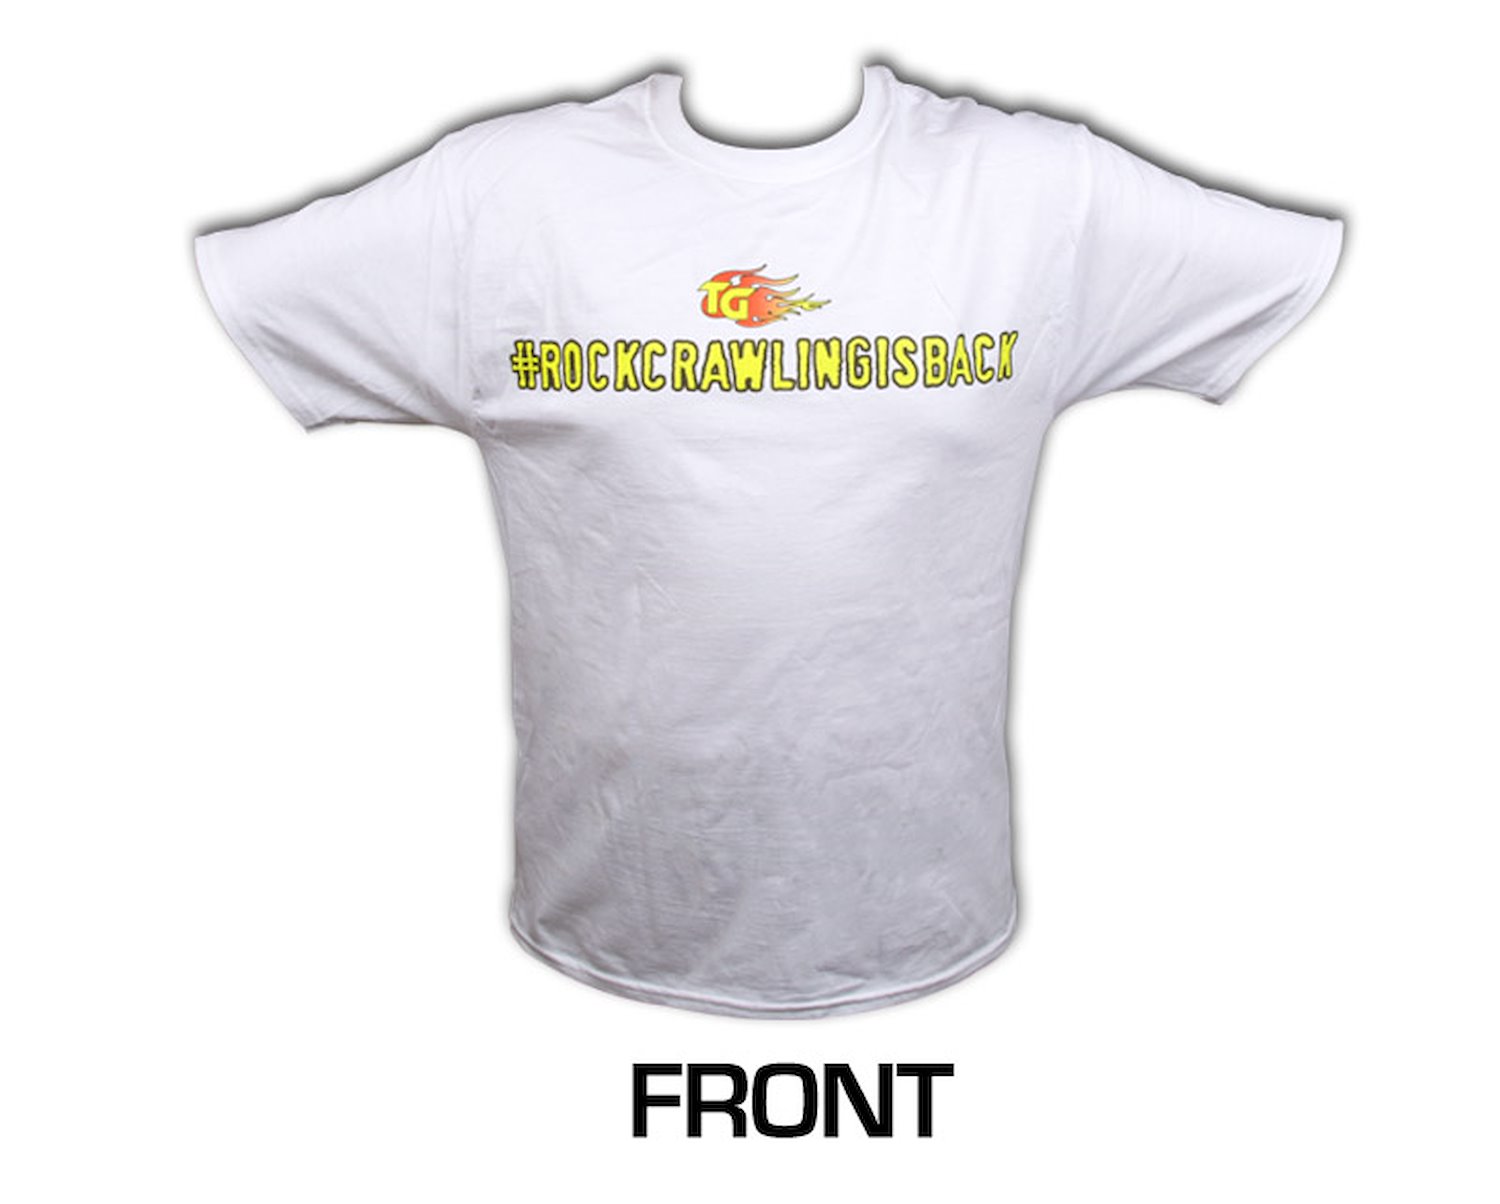 Short Sleeved White Shirt #rockcrawlingisback Small